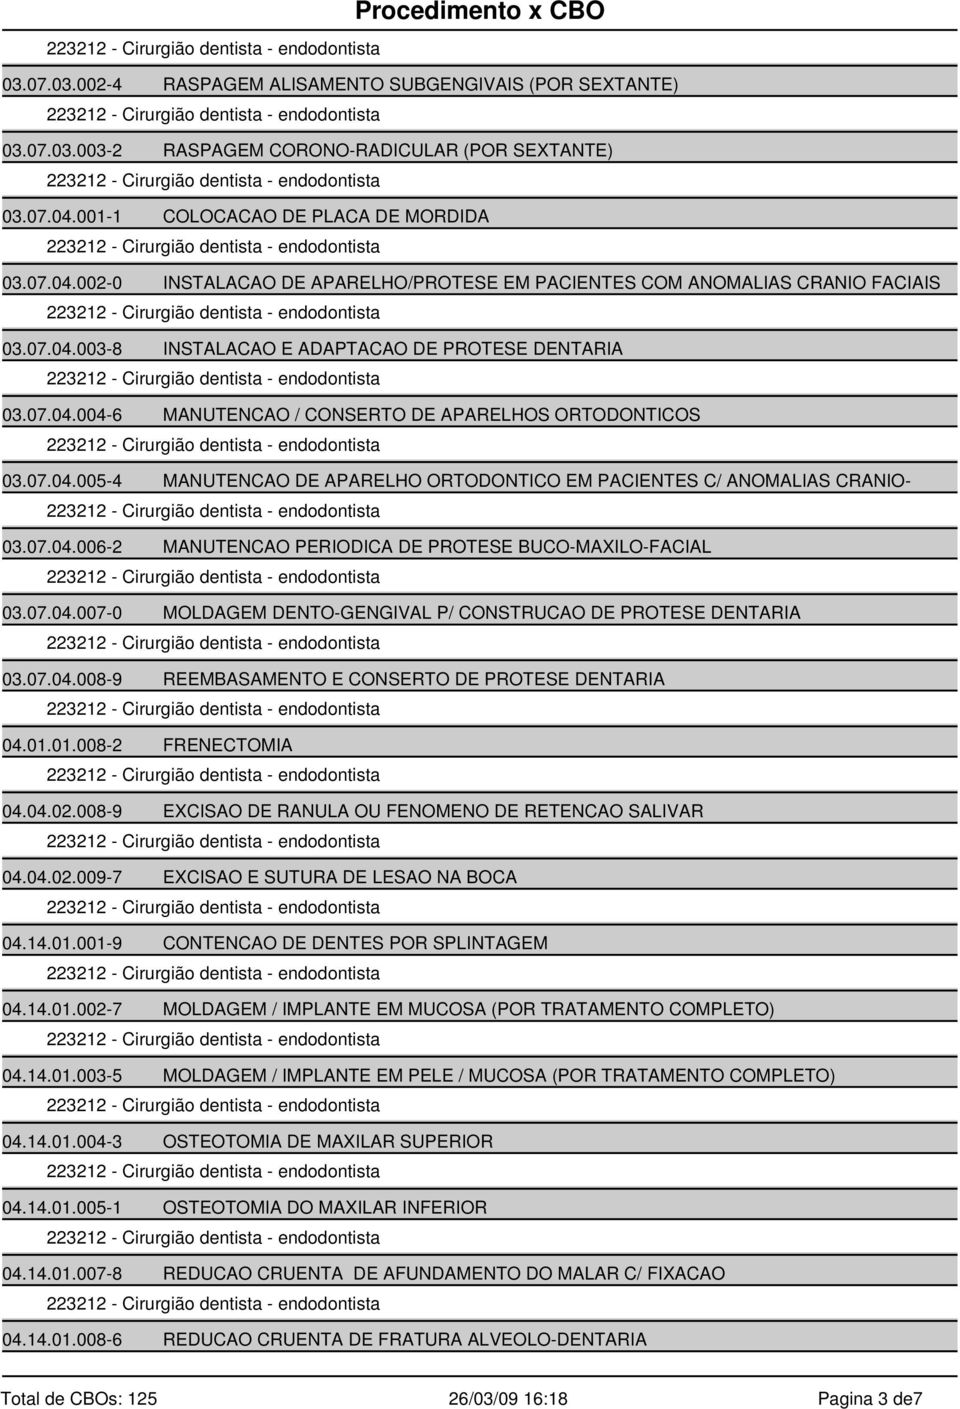 07.04.005-4 MANUTENCAO DE APARELHO ORTODONTICO EM PACIENTES C/ ANOMALIAS CRANIO- 03.07.04.006-2 MANUTENCAO PERIODICA DE PROTESE BUCO-MAXILO-FACIAL 03.07.04.007-0 MOLDAGEM DENTO-GENGIVAL P/ CONSTRUCAO DE PROTESE DENTARIA 03.